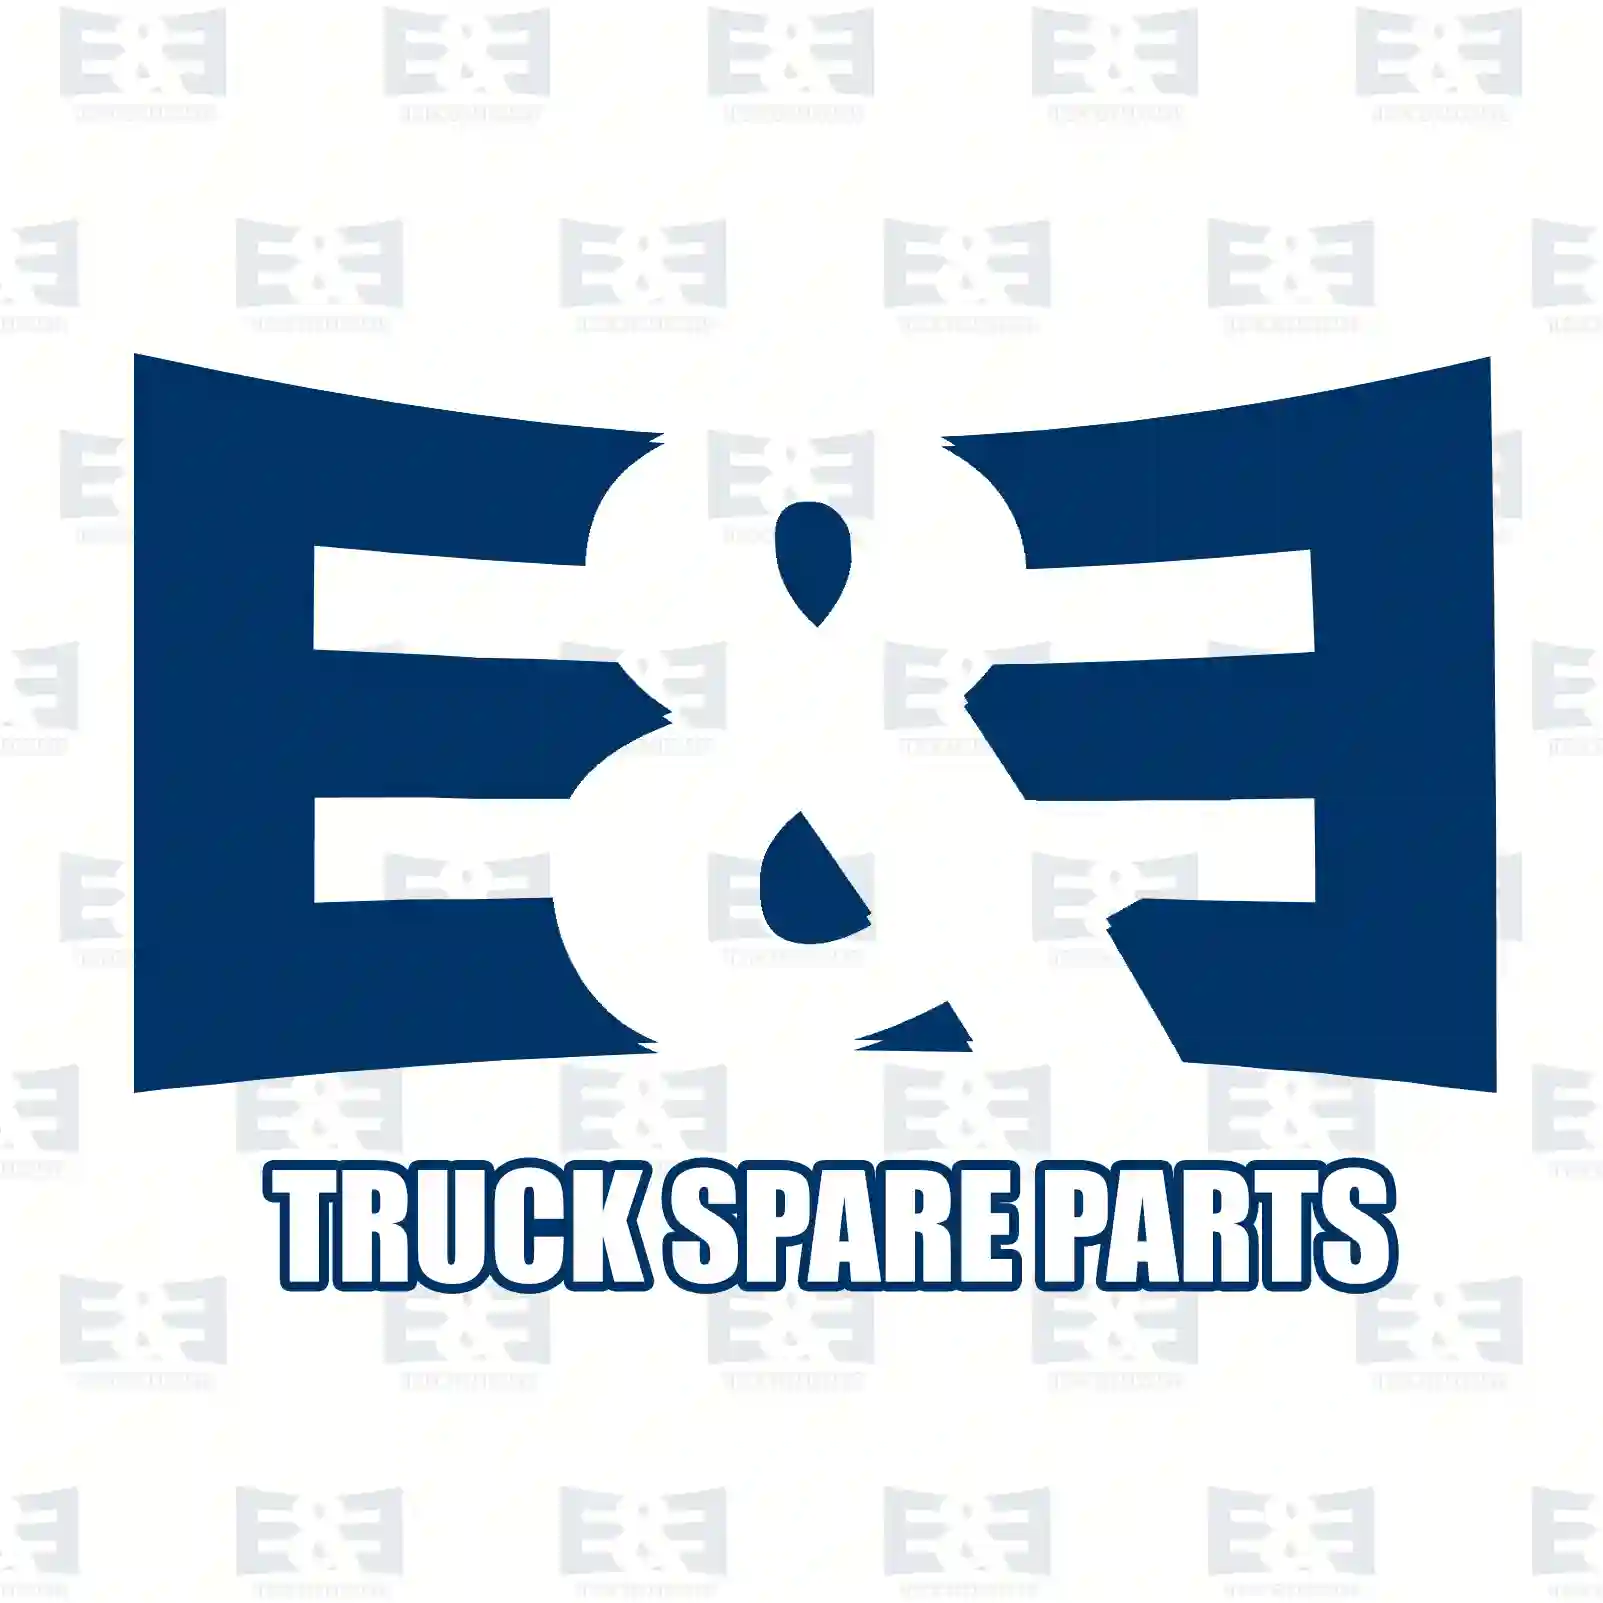 Wiper blade, 2E2291275, 2376325, ZG21297-0008 ||  2E2291275 E&E Truck Spare Parts | Truck Spare Parts, Auotomotive Spare Parts Wiper blade, 2E2291275, 2376325, ZG21297-0008 ||  2E2291275 E&E Truck Spare Parts | Truck Spare Parts, Auotomotive Spare Parts